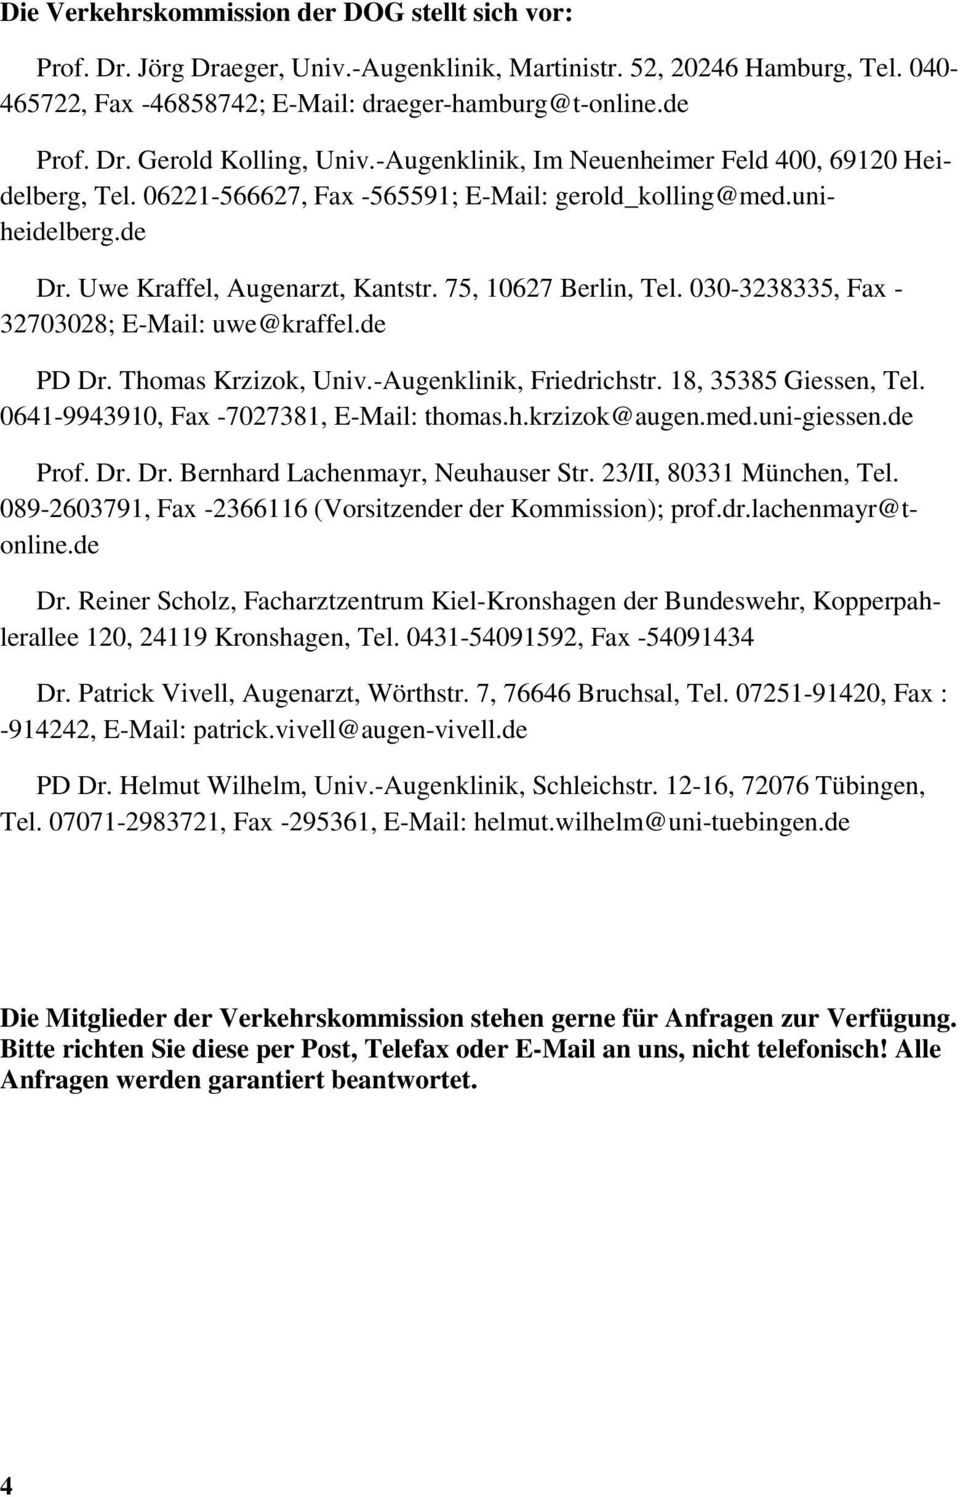 030-3238335, Fax - 32703028; E-Mail: uwe@kraffel.de PD Dr. Thomas Krzizok, Univ.-Augenklinik, Friedrichstr. 18, 35385 Giessen, Tel. 0641-9943910, Fax -7027381, E-Mail: thomas.h.krzizok@augen.med.